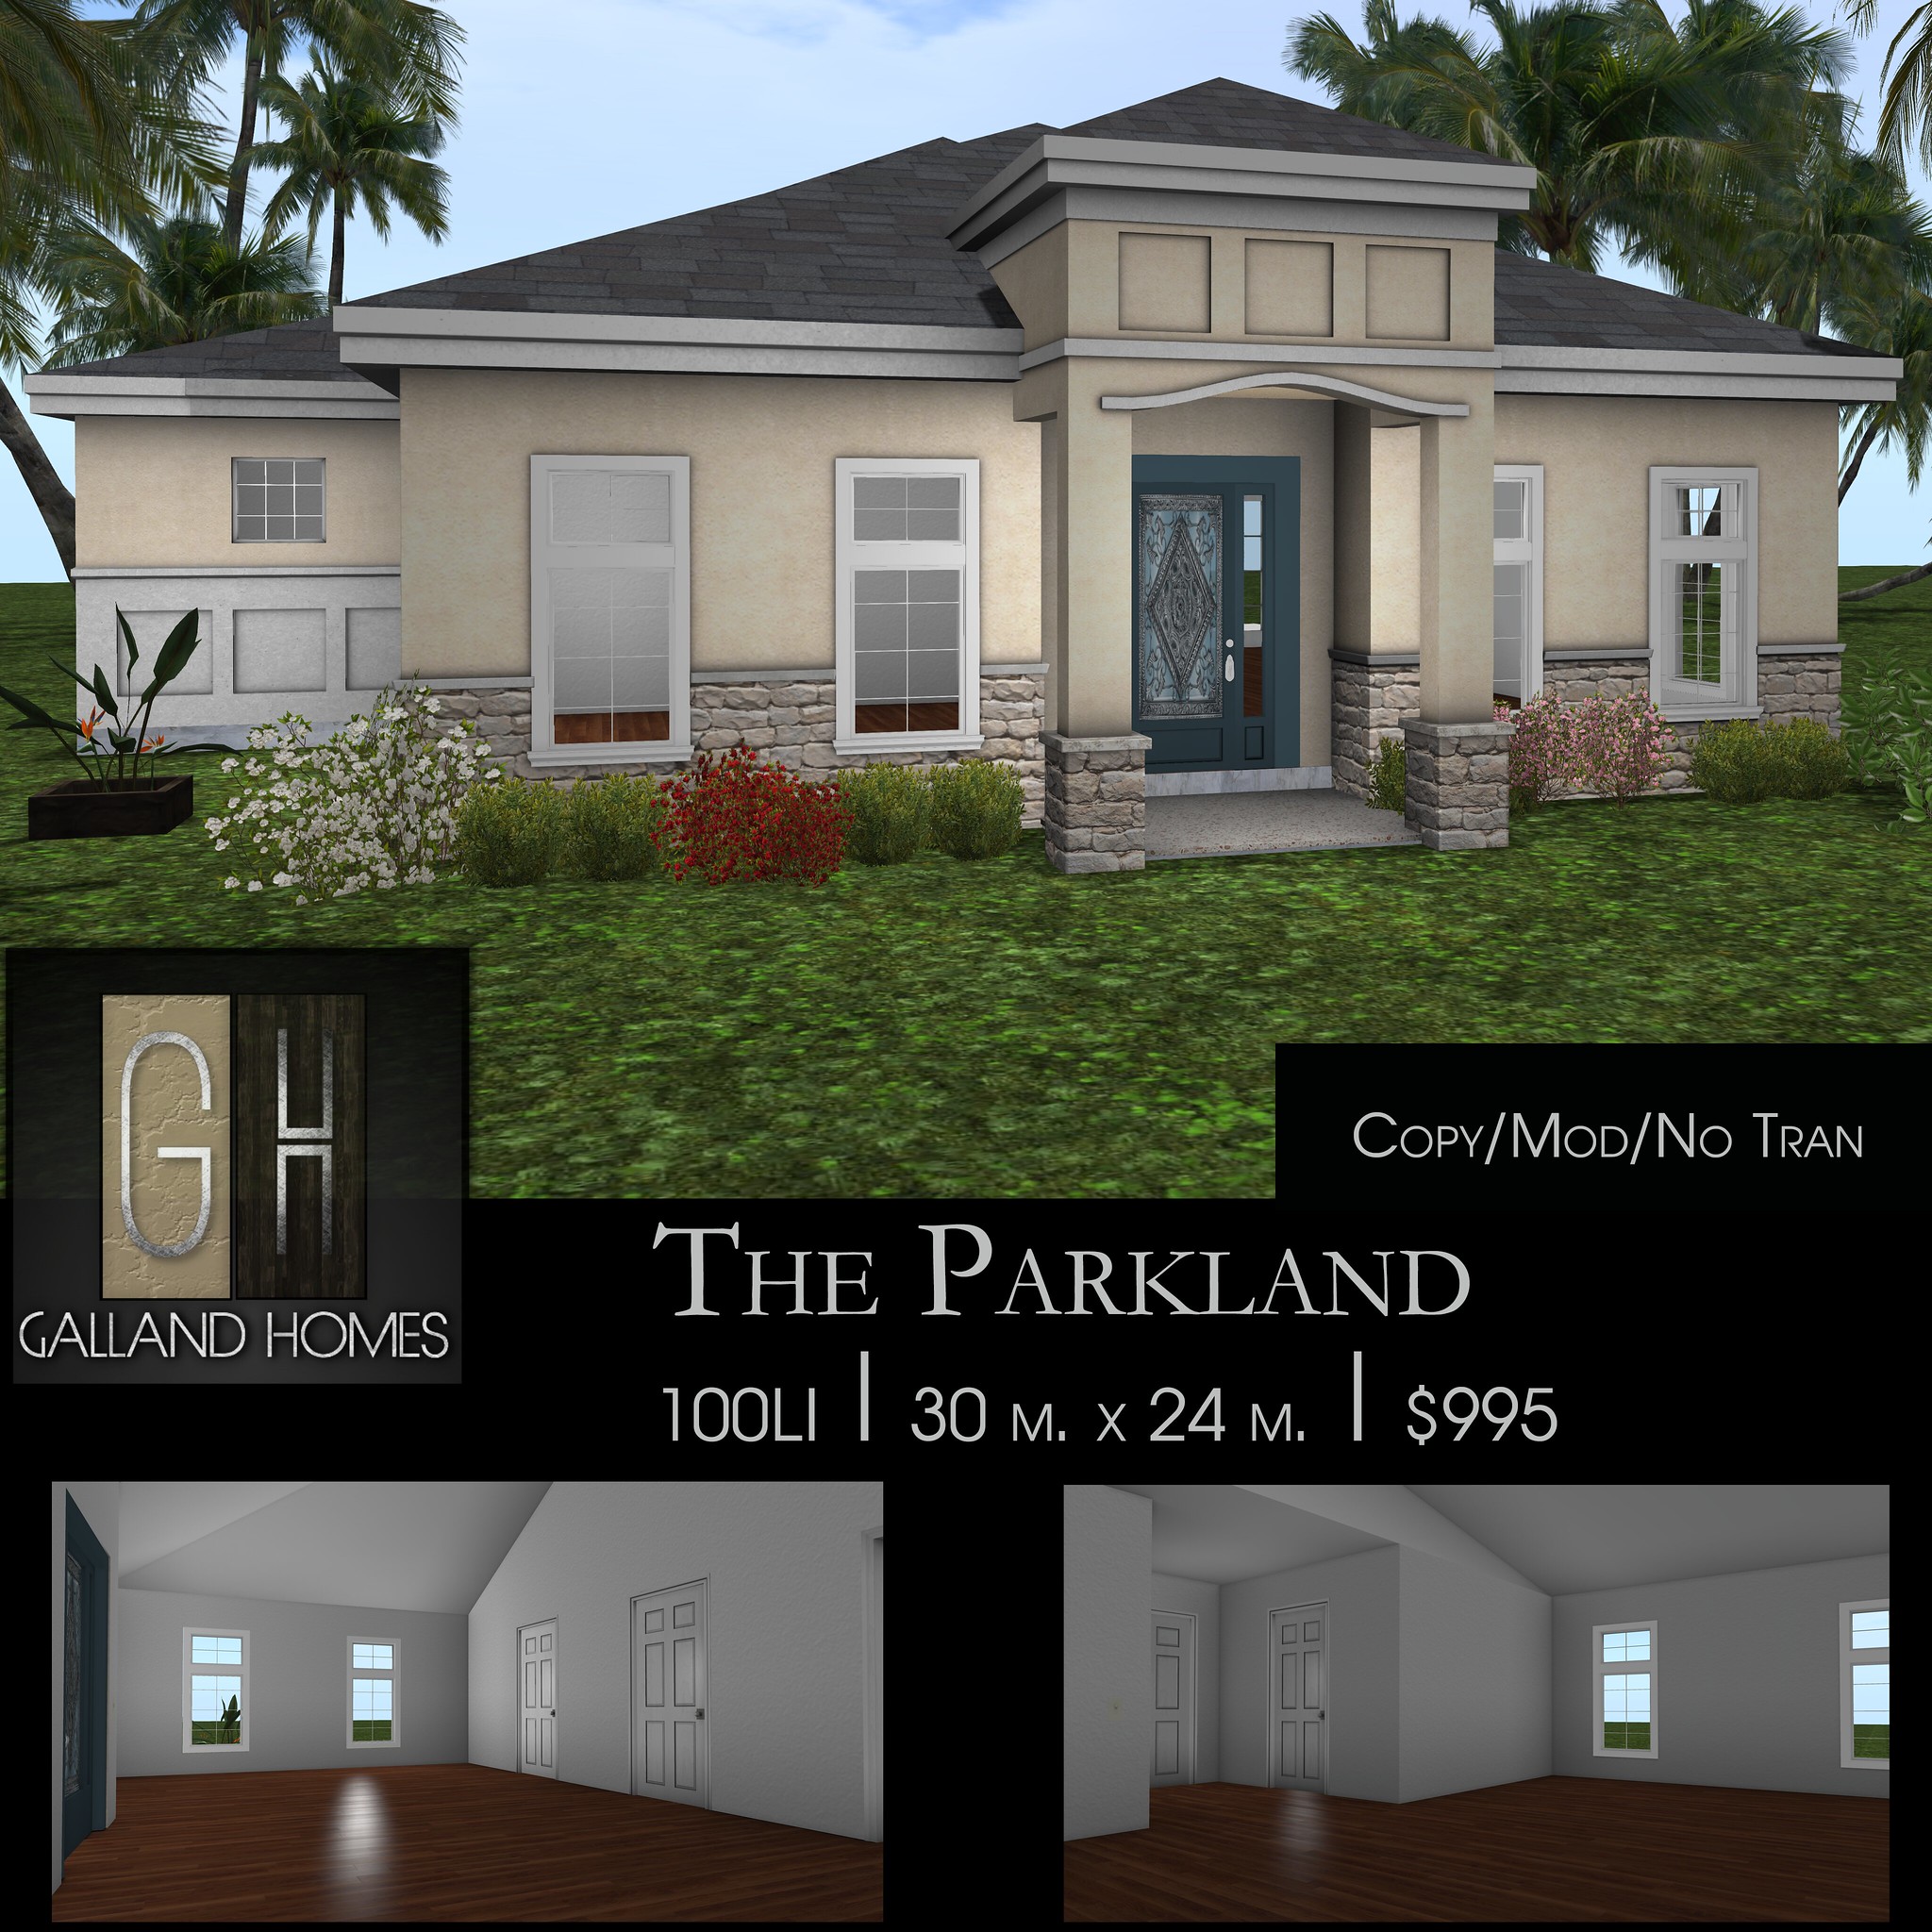 Galland Homes – The Parkland